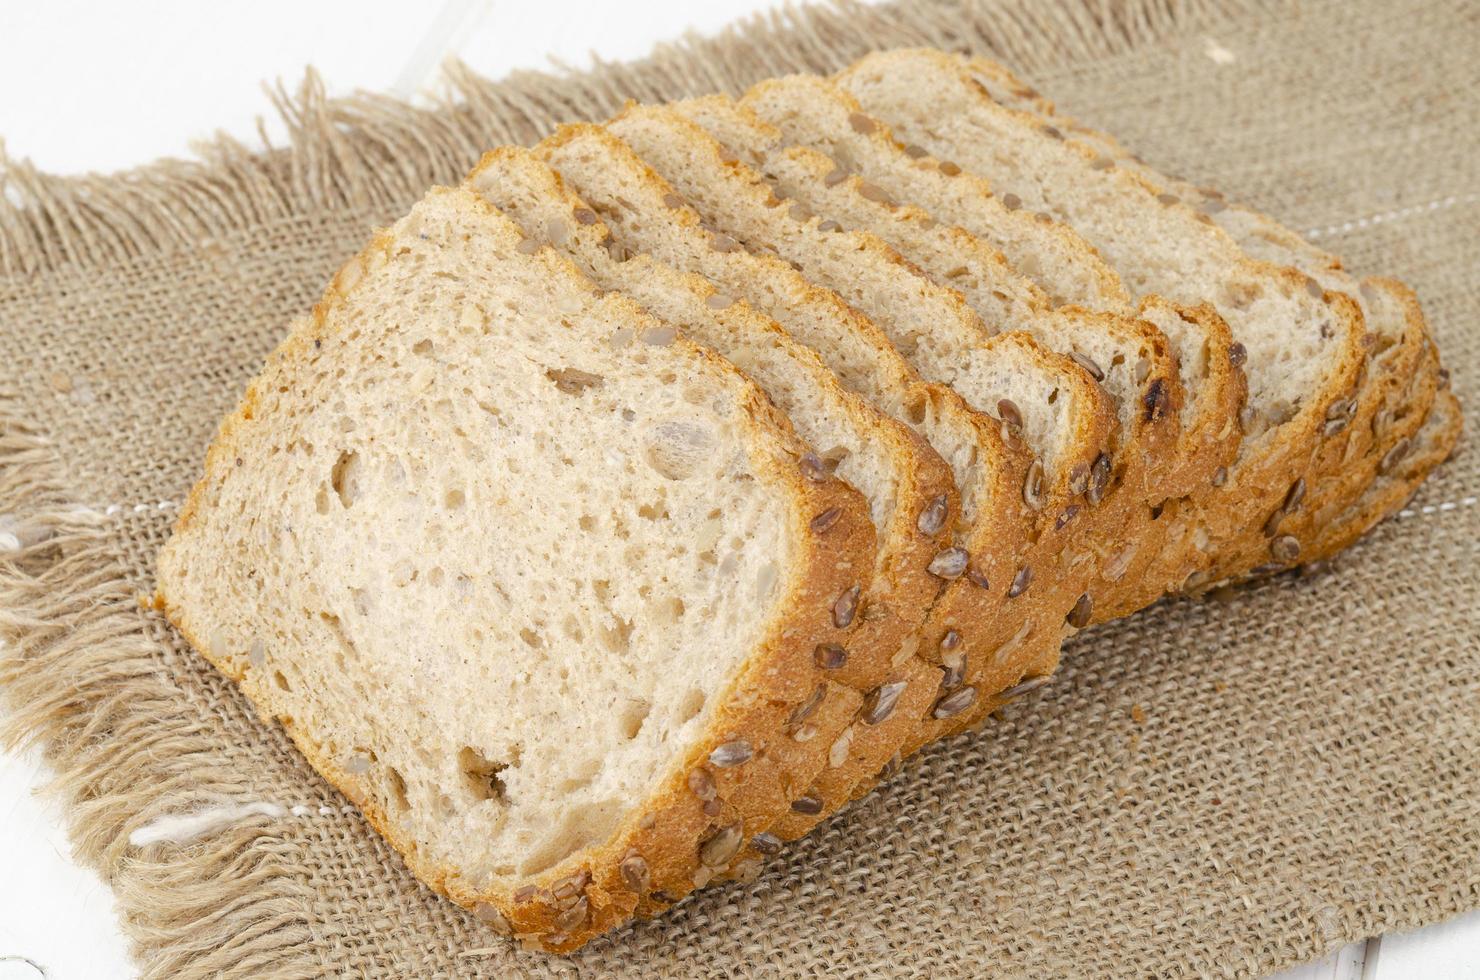 pão integral fatiado com sementes de girassol, formato quadrado. foto de estúdio